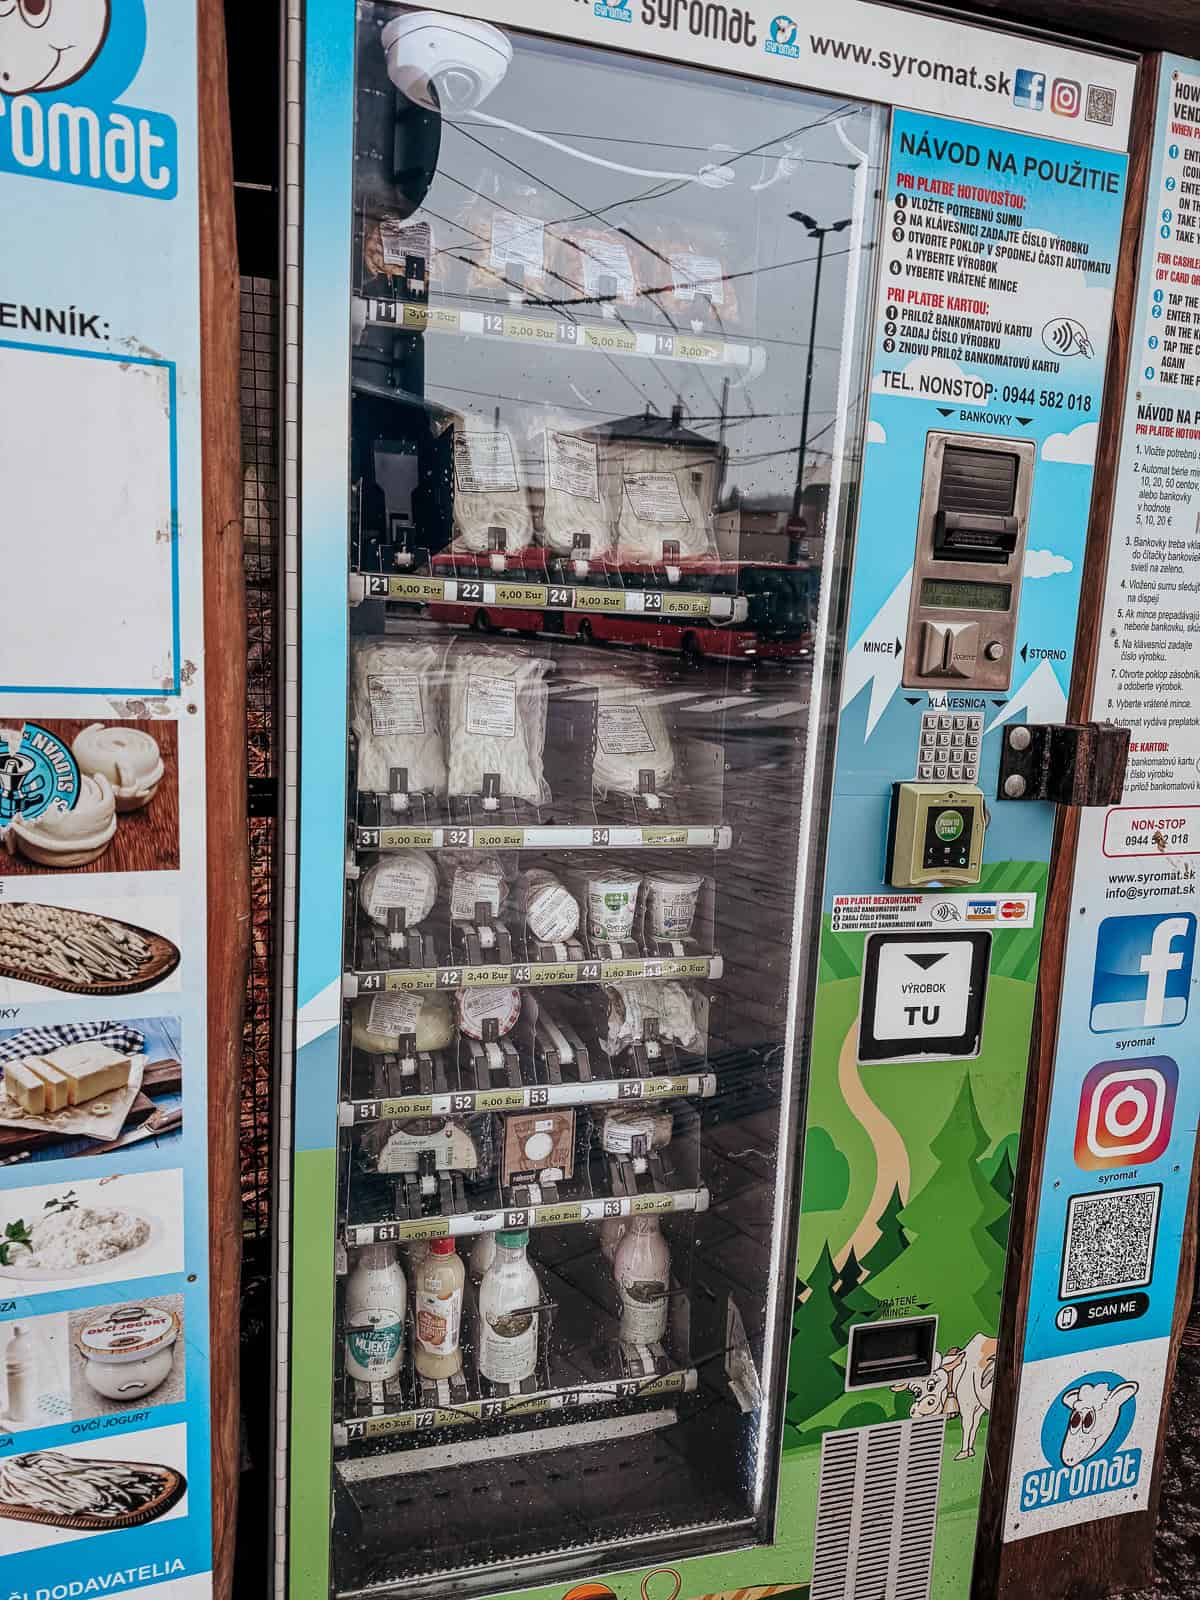 A unique vending machine (